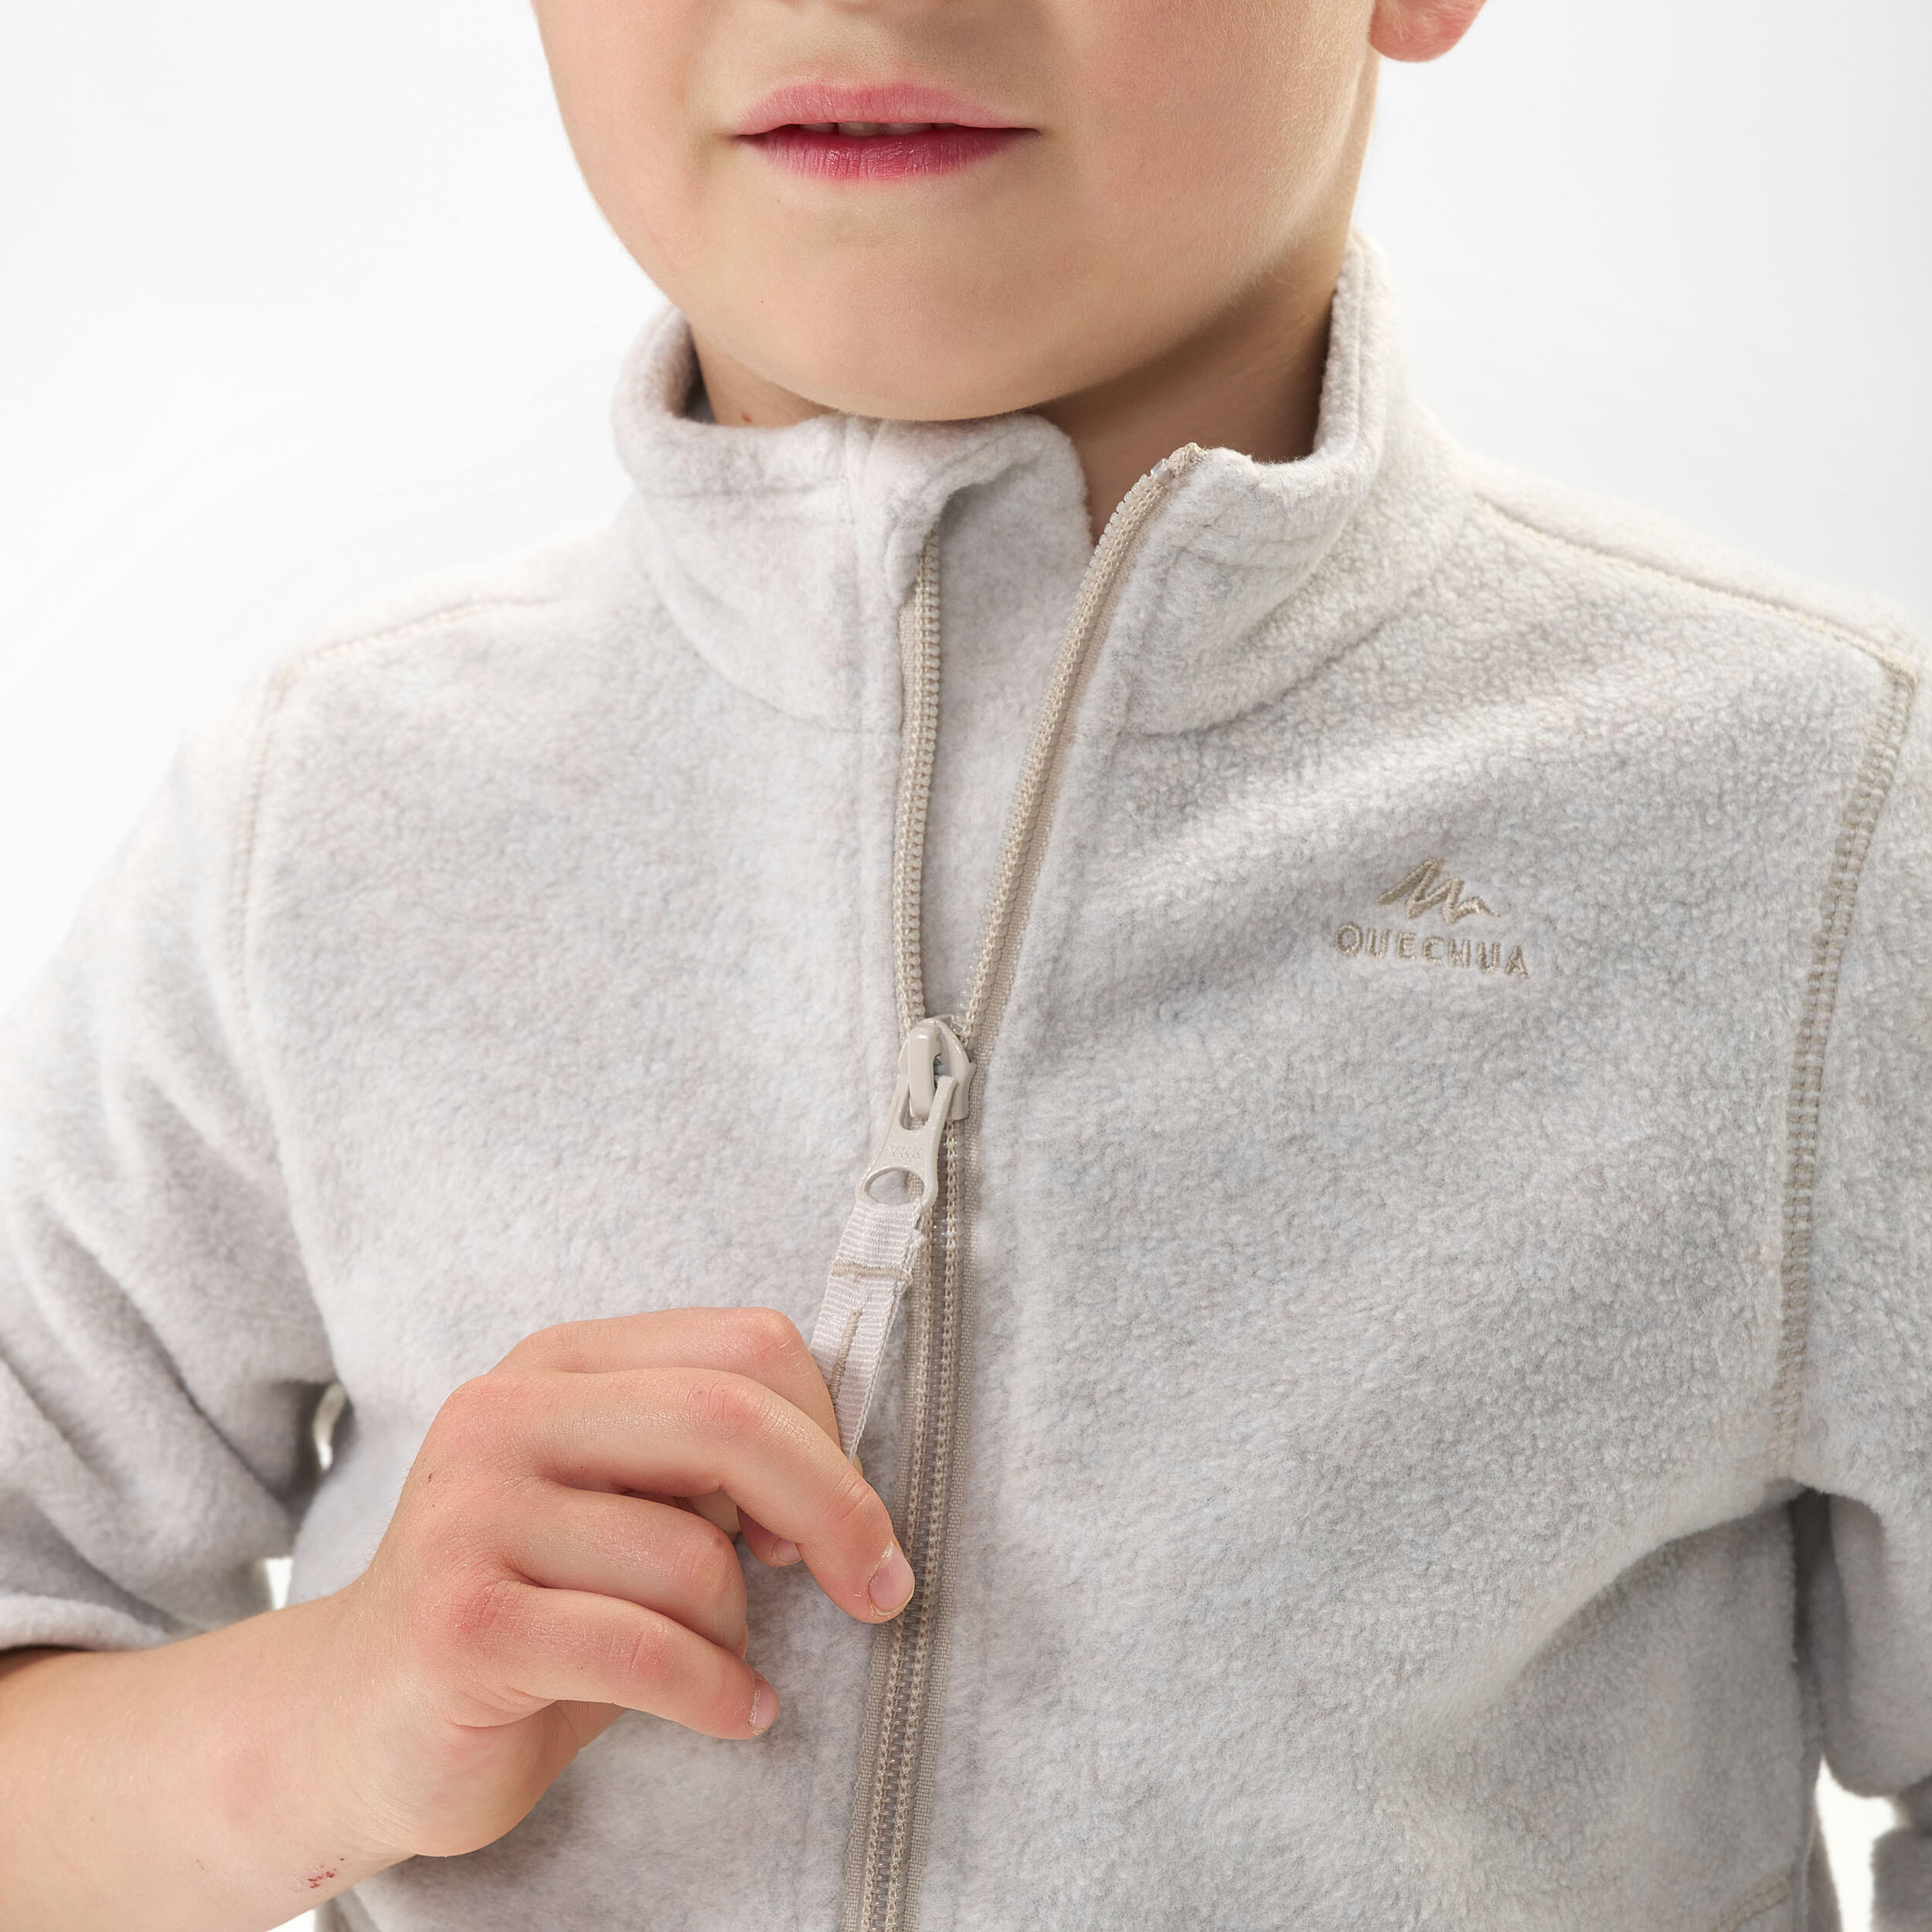 Kids’ Hiking Fleece Jacket - MH150 Aged 2-6 - Beige 3/4